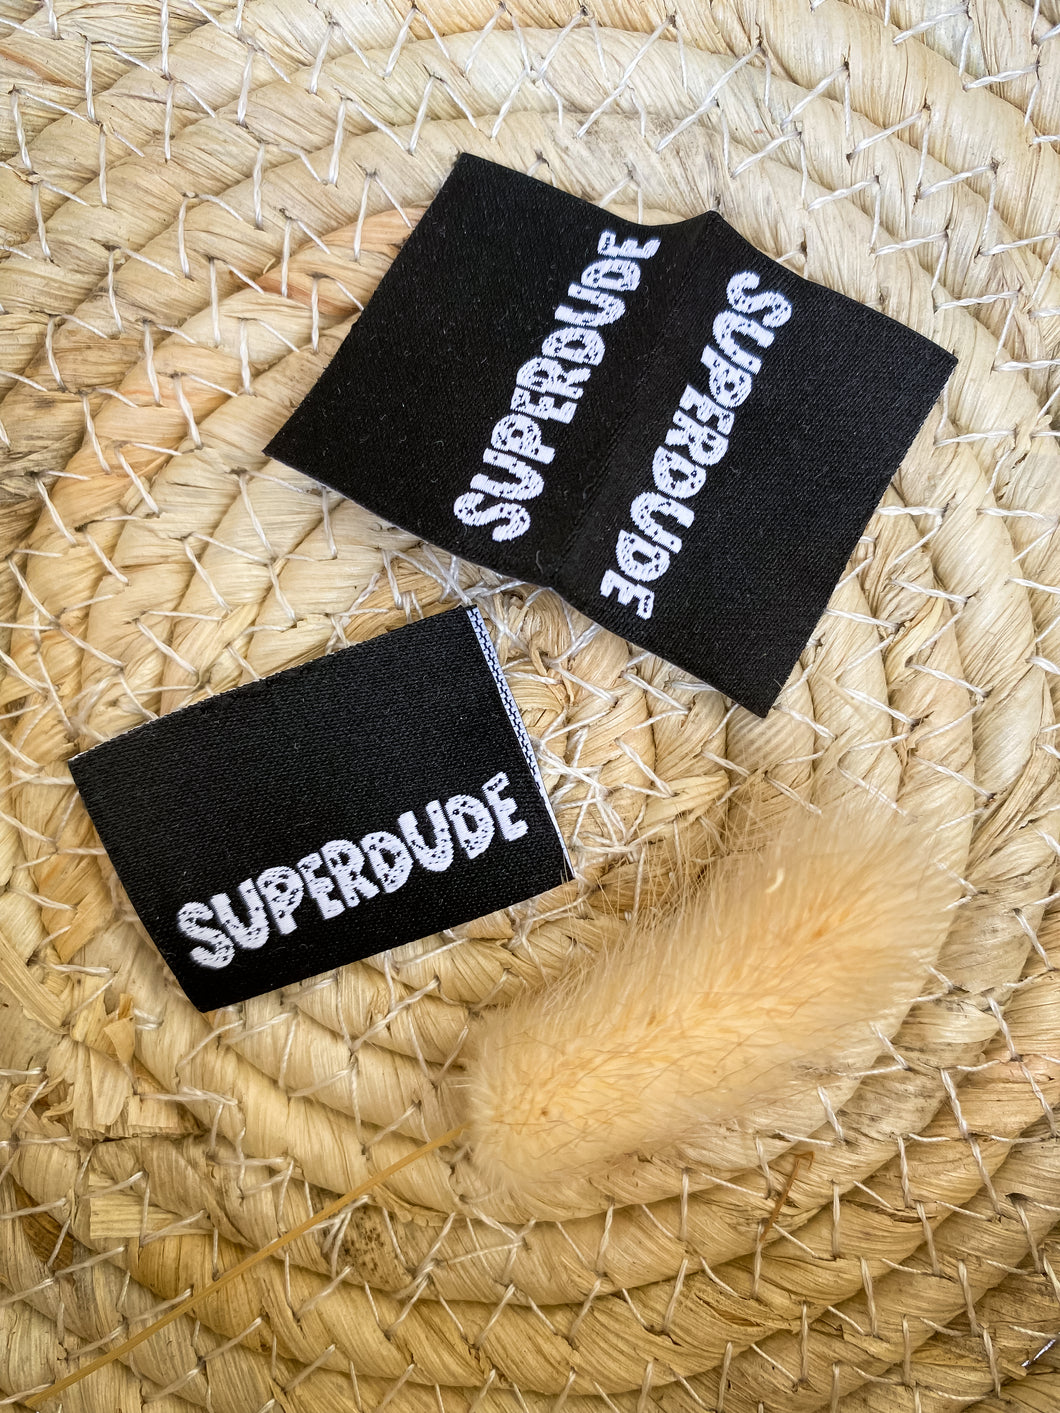 Superdude Label